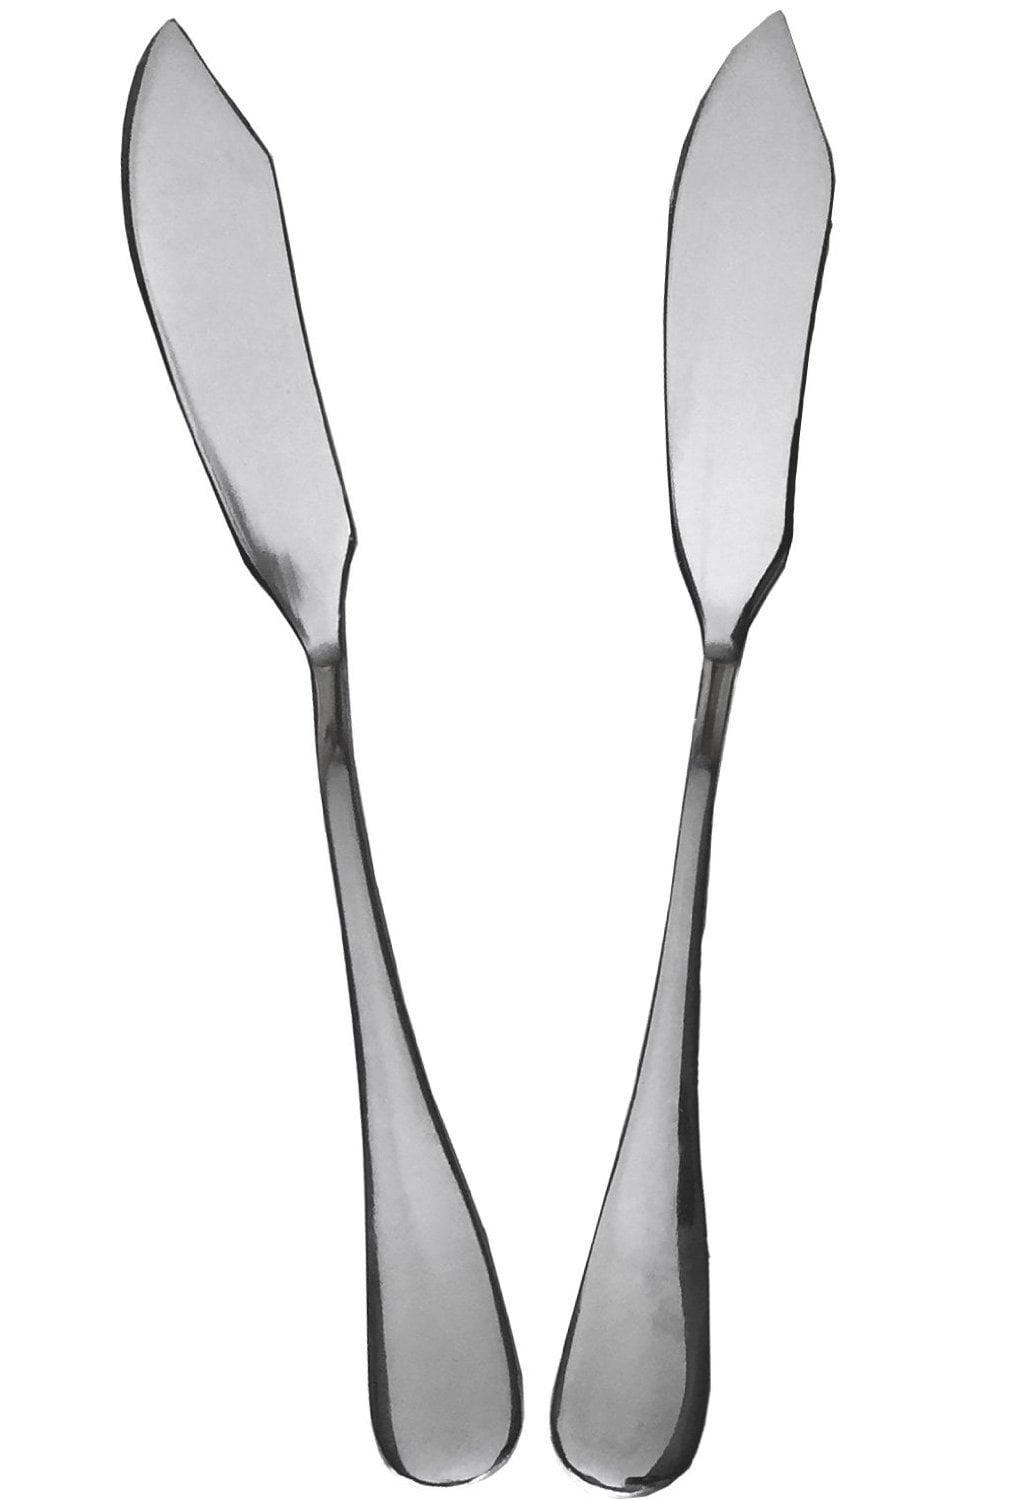 Appetizer Serving Butter Knife Spreader Hammered Silver Metal Black Stone  Arrow